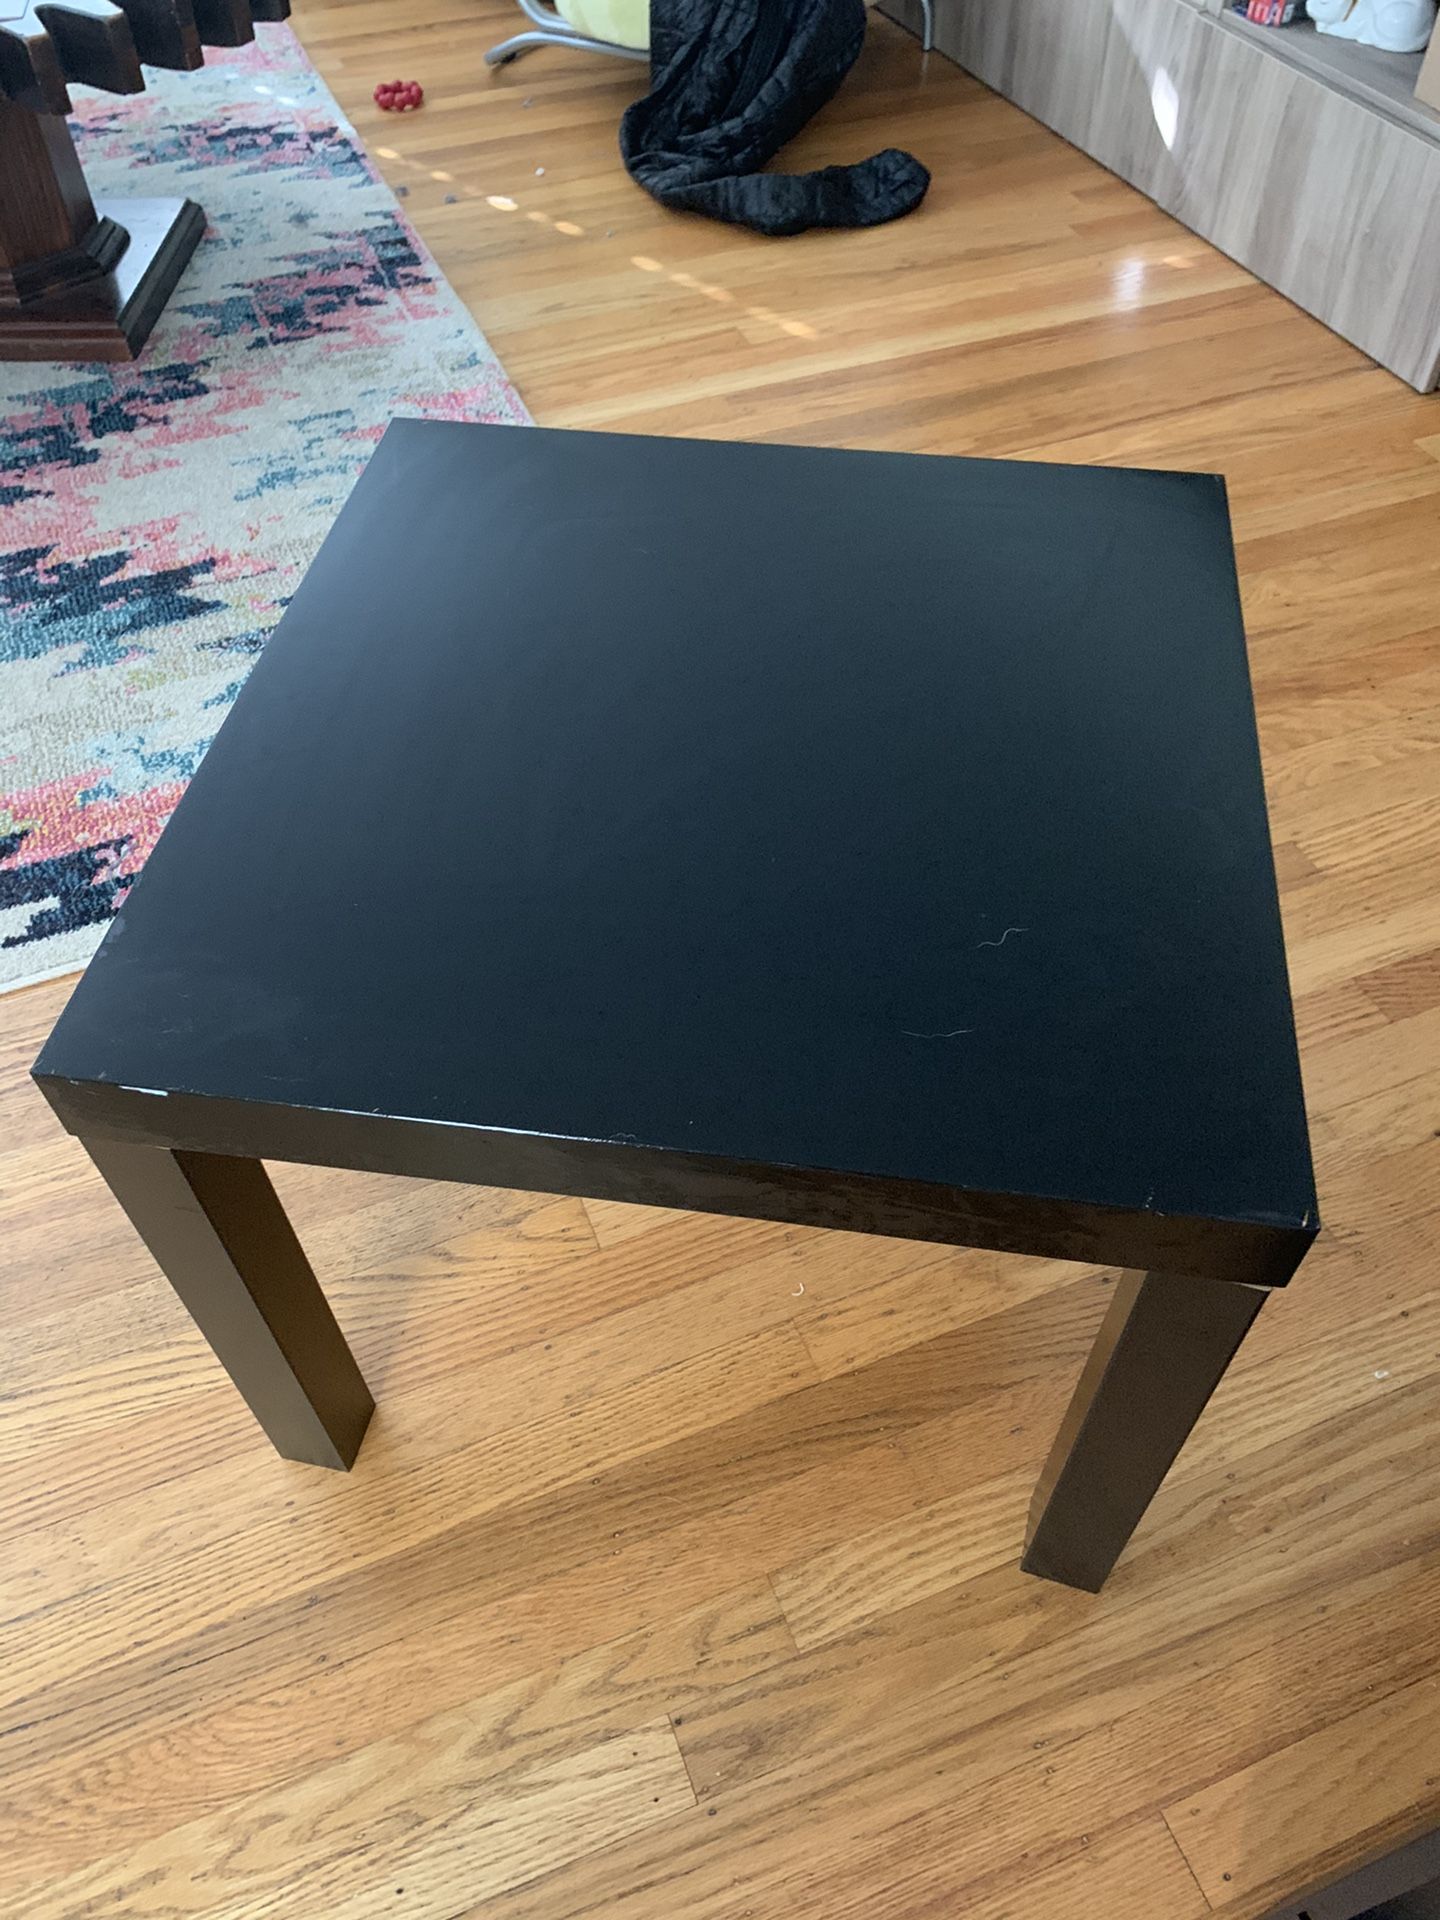 Square IKEA table